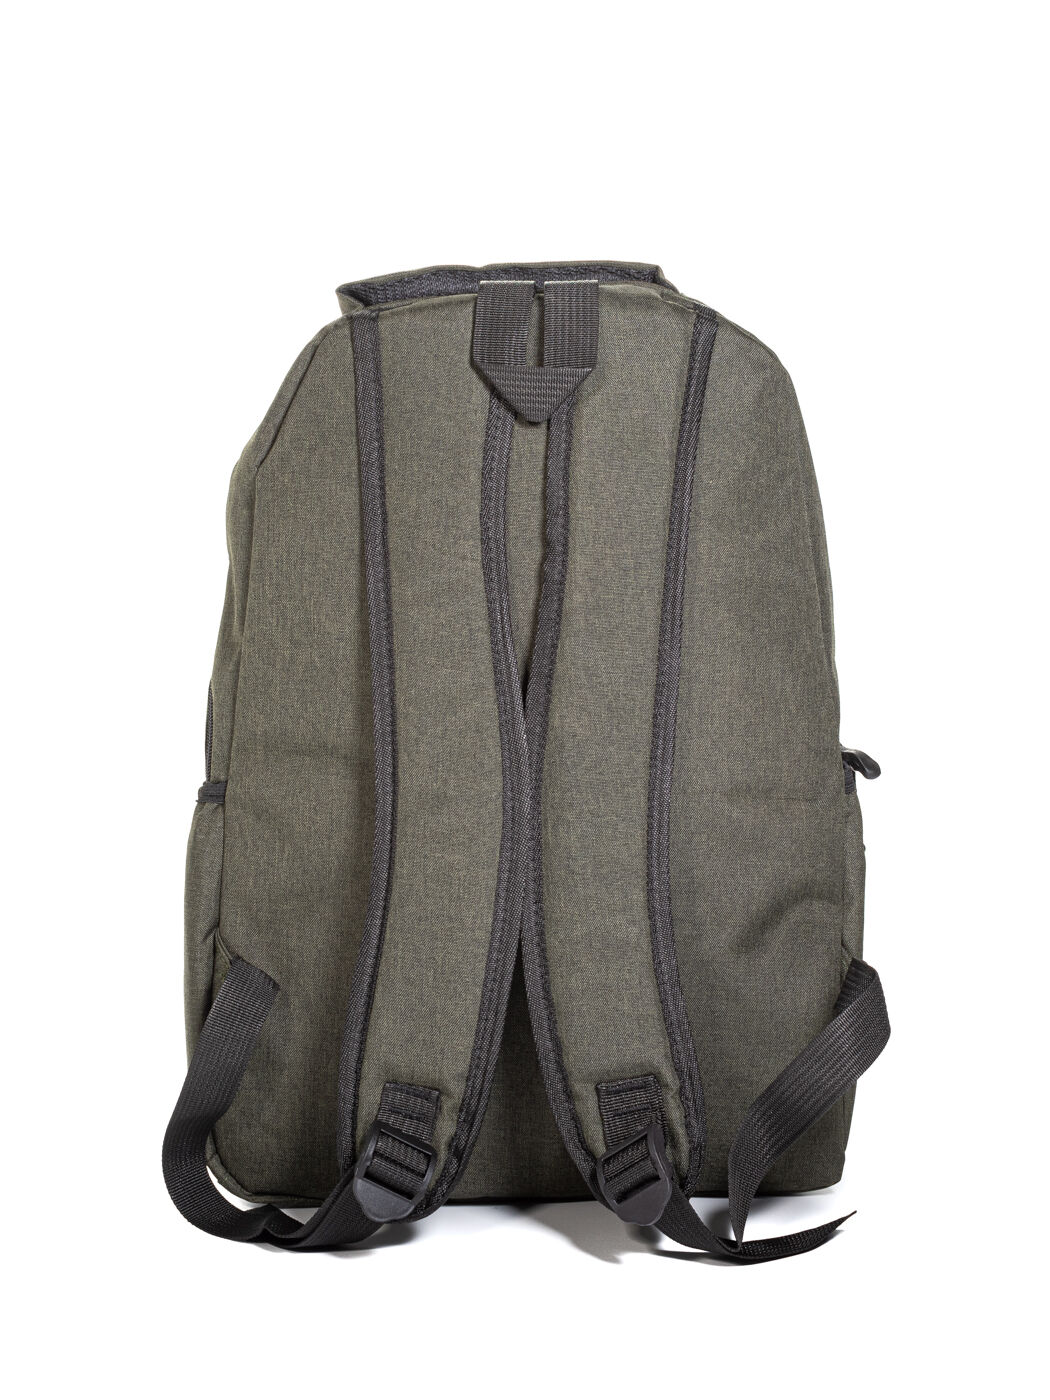 Рюкзак текстиль зеленый-М вид 1